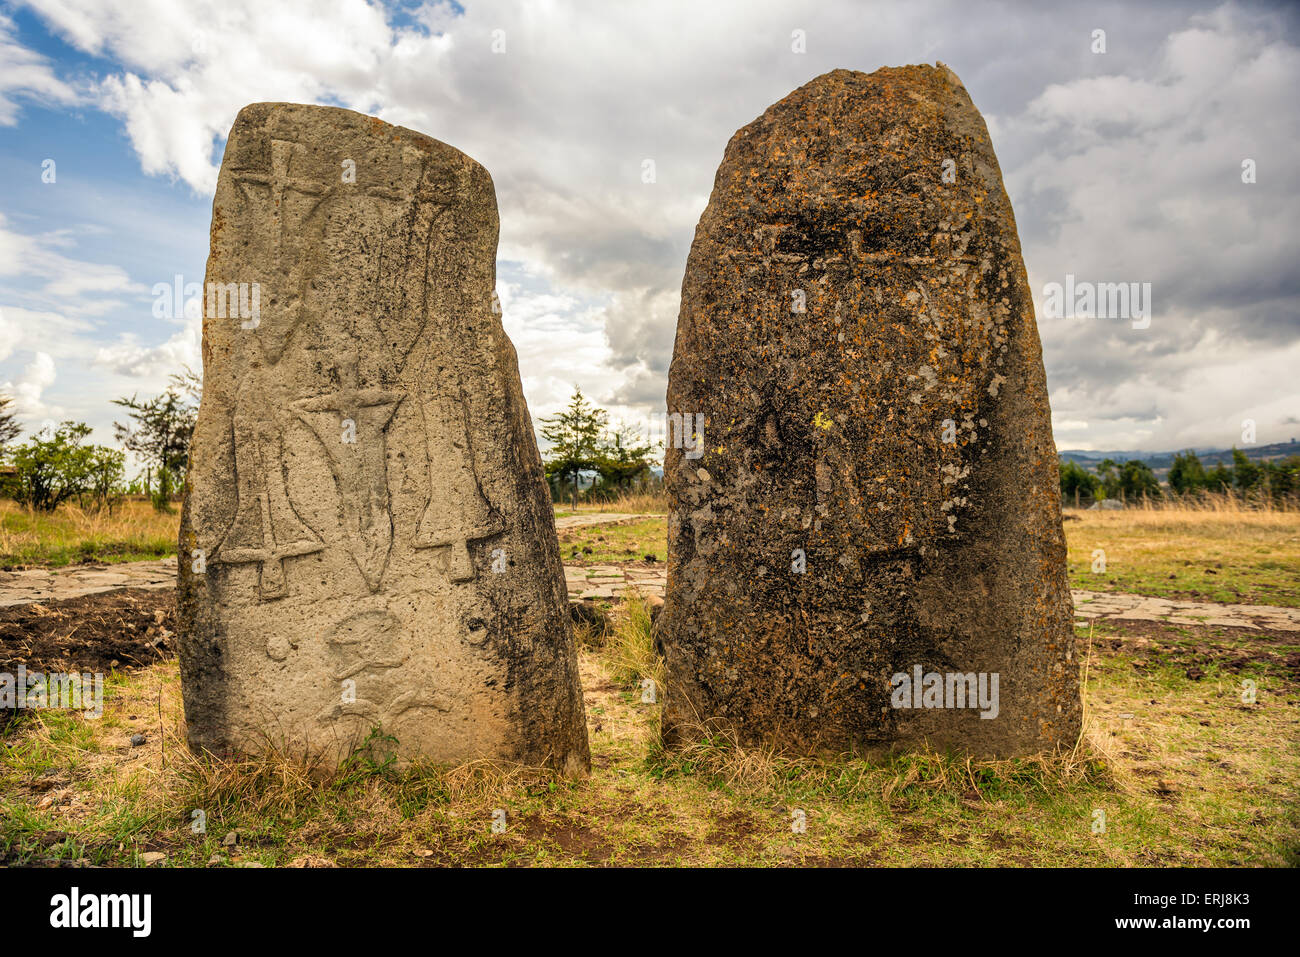 Tiya megalitico di colonne in pietra, un sito Patrimonio Mondiale dell'UNESCO vicino ad Addis Abeba, Etiopia. Foto Stock